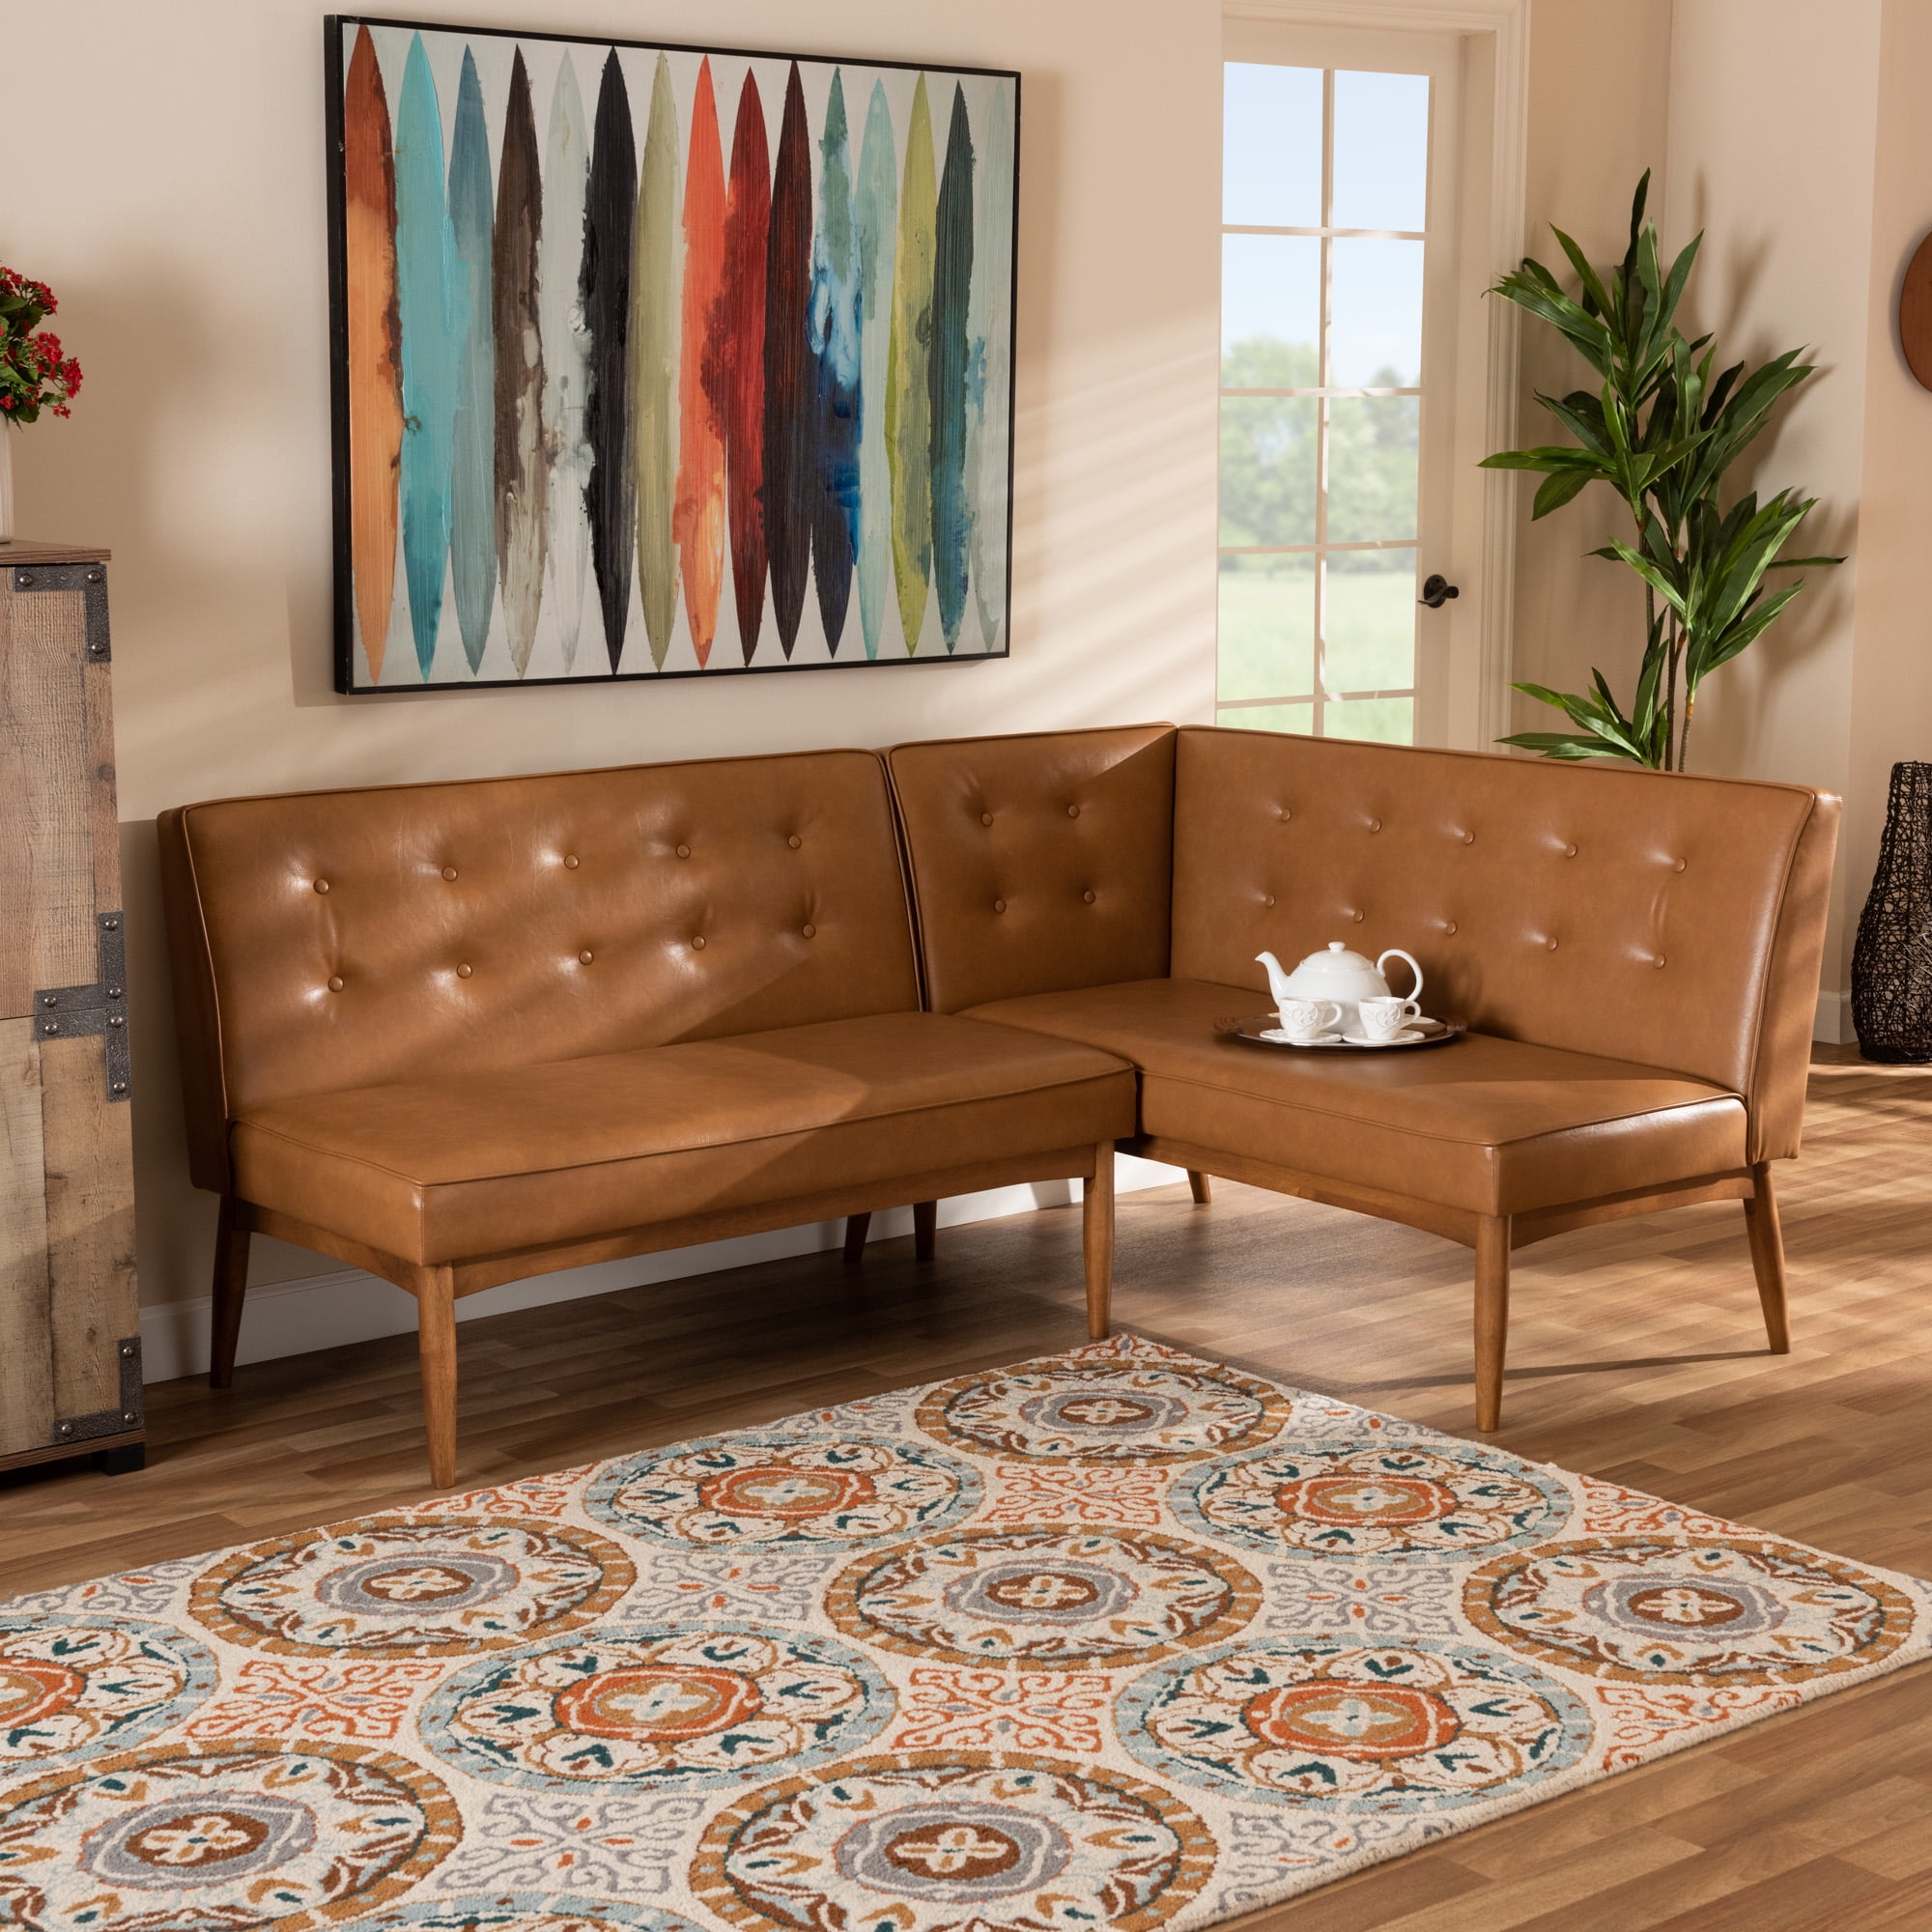 Cheap Custom Upholstered Furniture